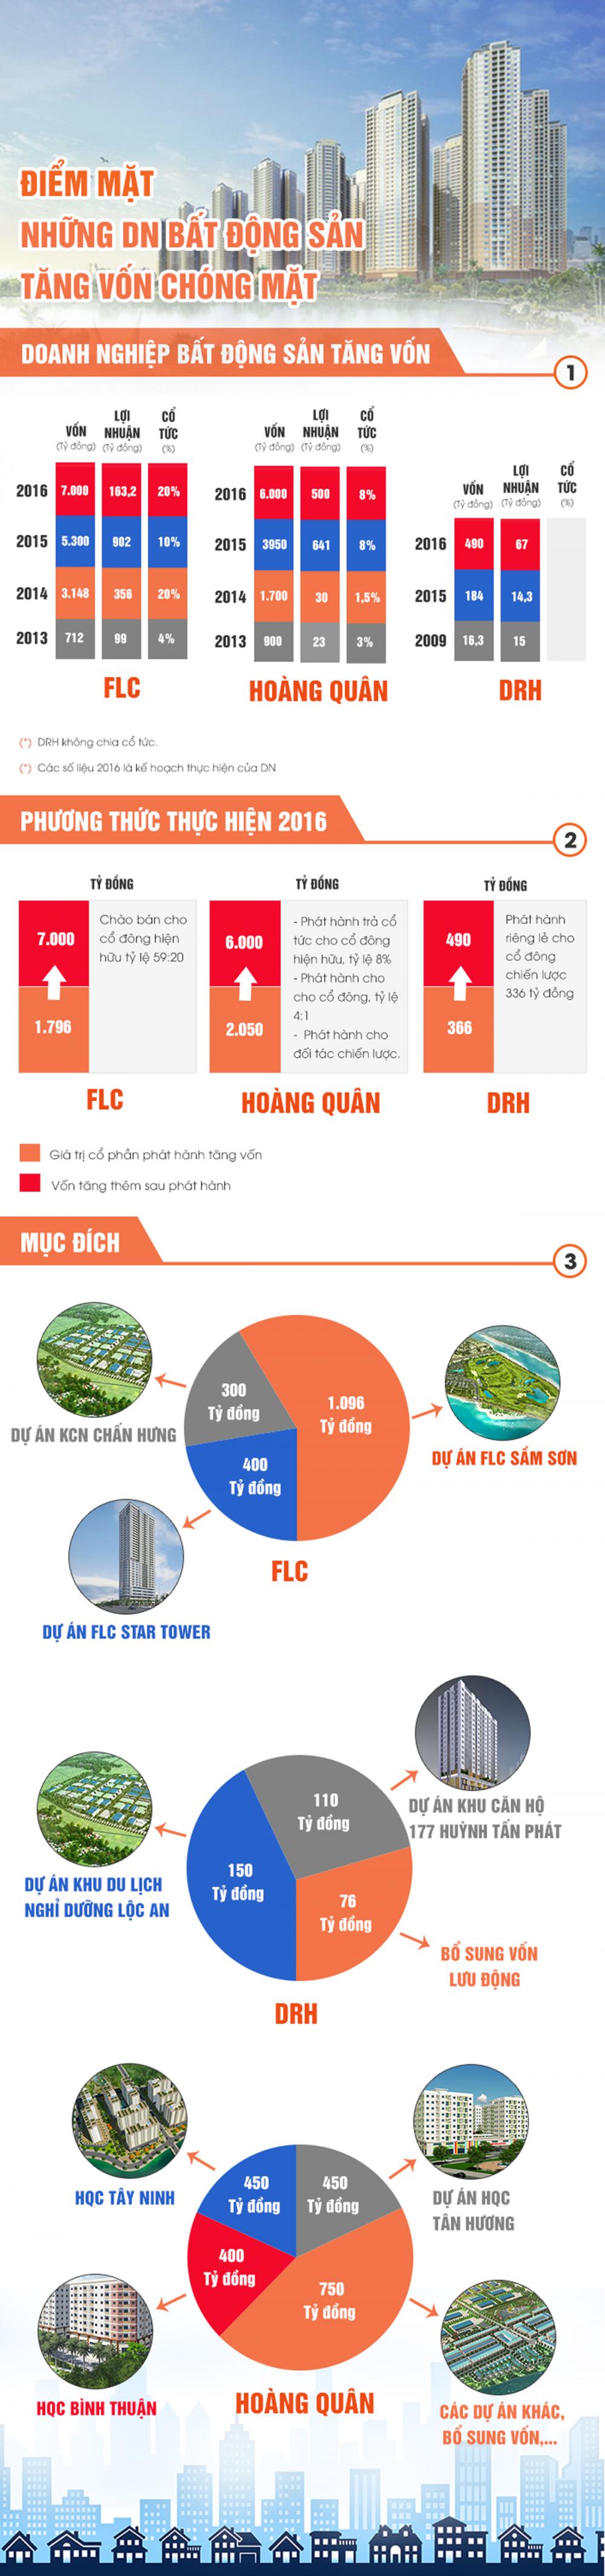 Infographic: Những doanh nghiệp địa ốc tăng vốn 'chóng mặt'